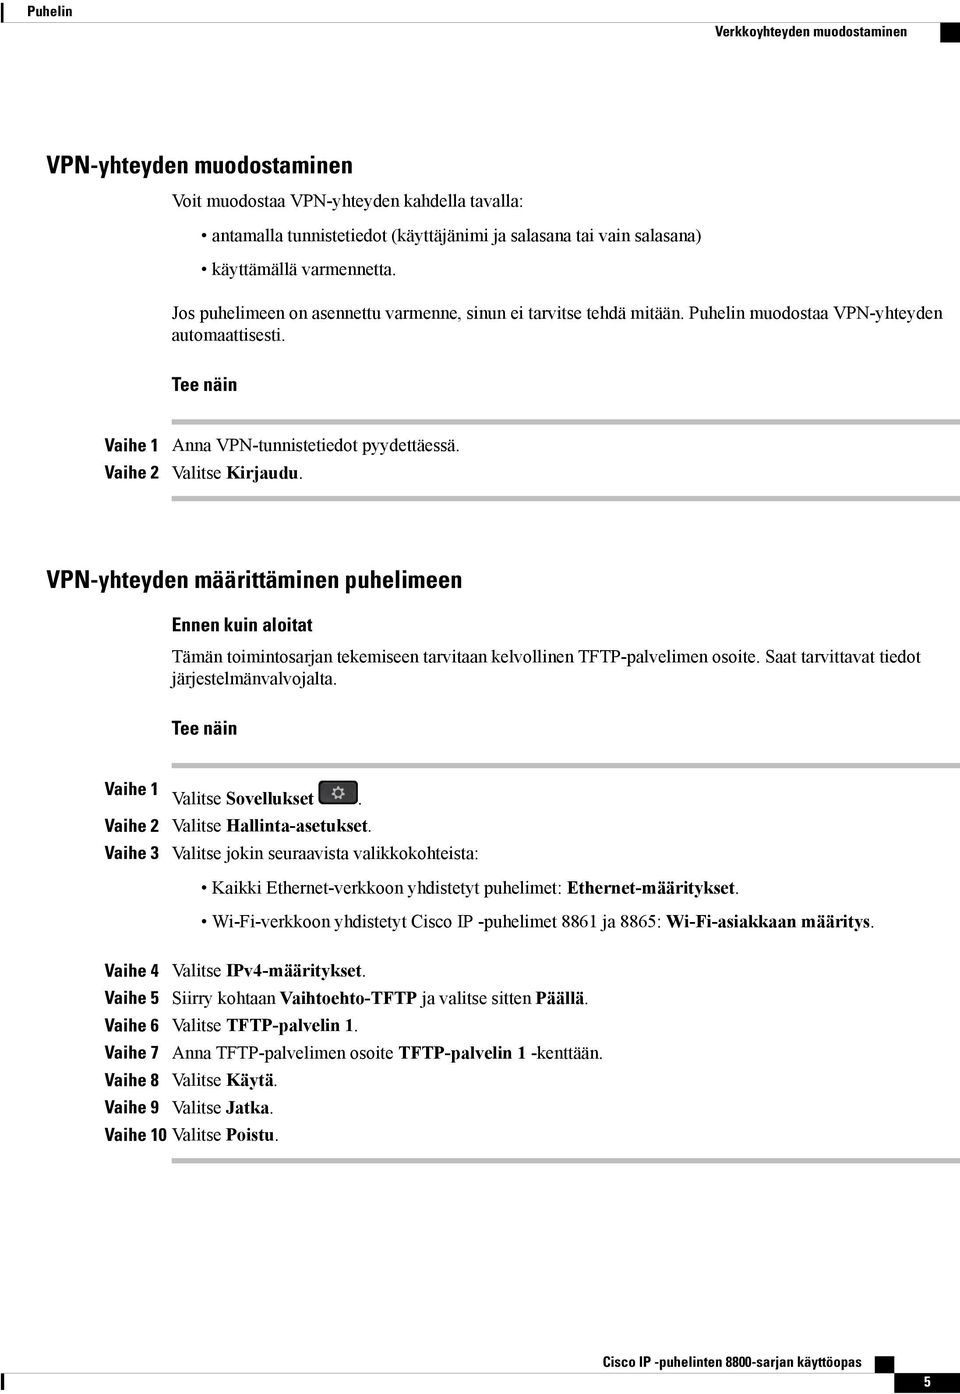 VPN-yhteyden määrittäminen puhelimeen Ennen kuin aloitat Tämän toimintosarjan tekemiseen tarvitaan kelvollinen TFTP-palvelimen osoite. Saat tarvittavat tiedot järjestelmänvalvojalta.